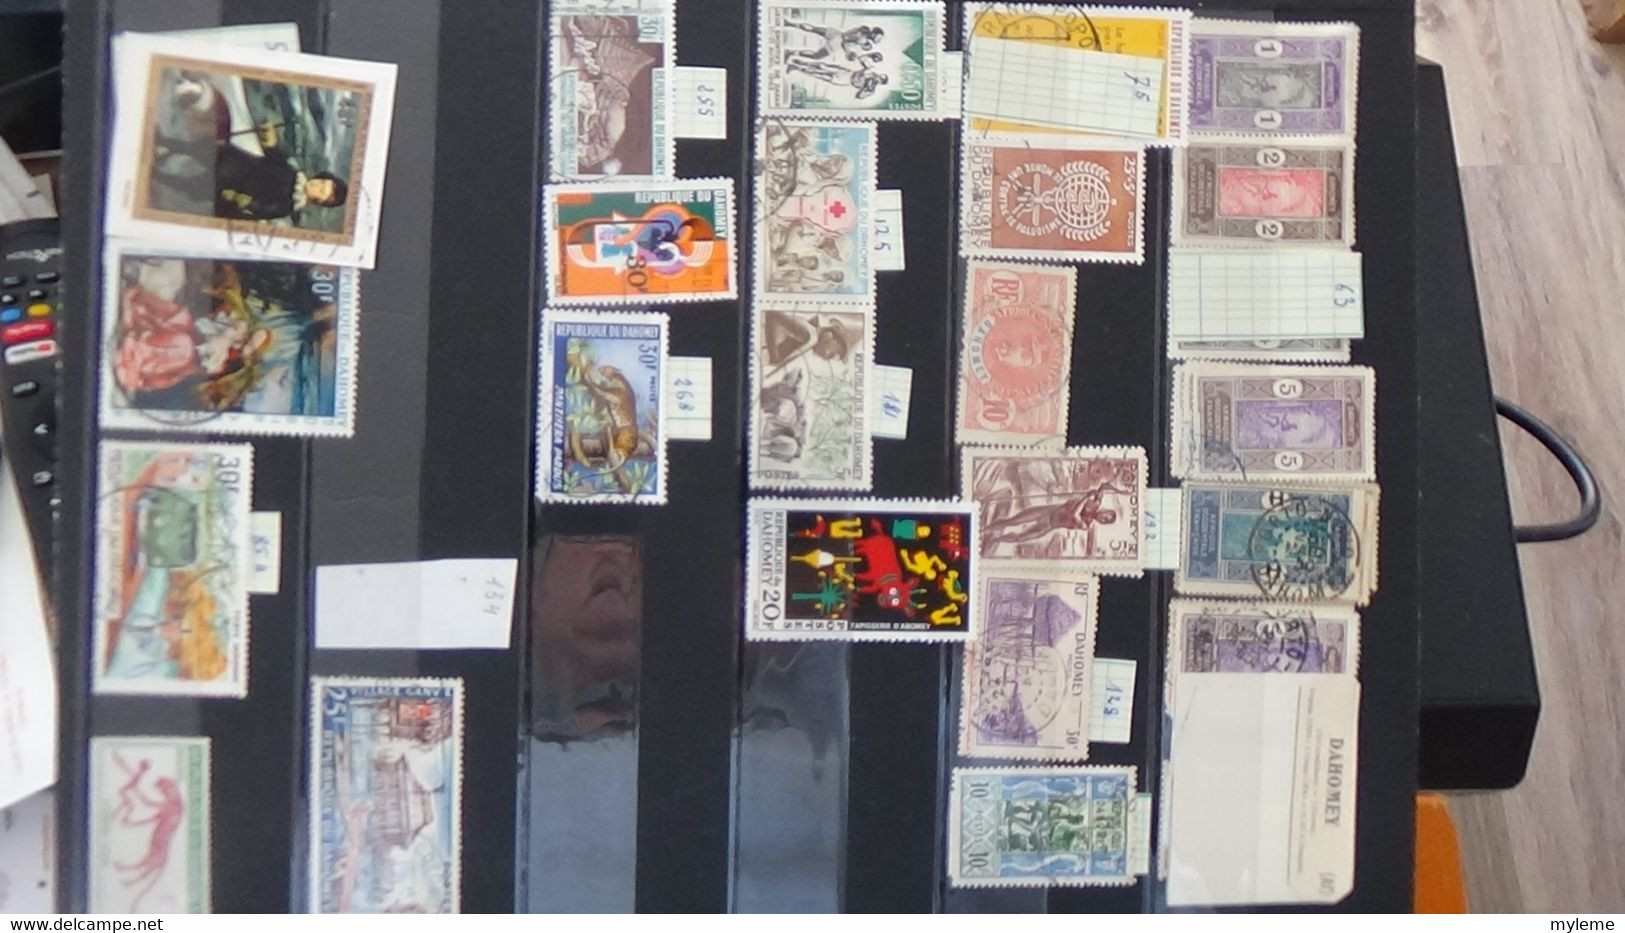 AN72 Collection de timbres oblitérés de divers pays + Comores N° 104A ** cote 150 euros  A saisir !!!